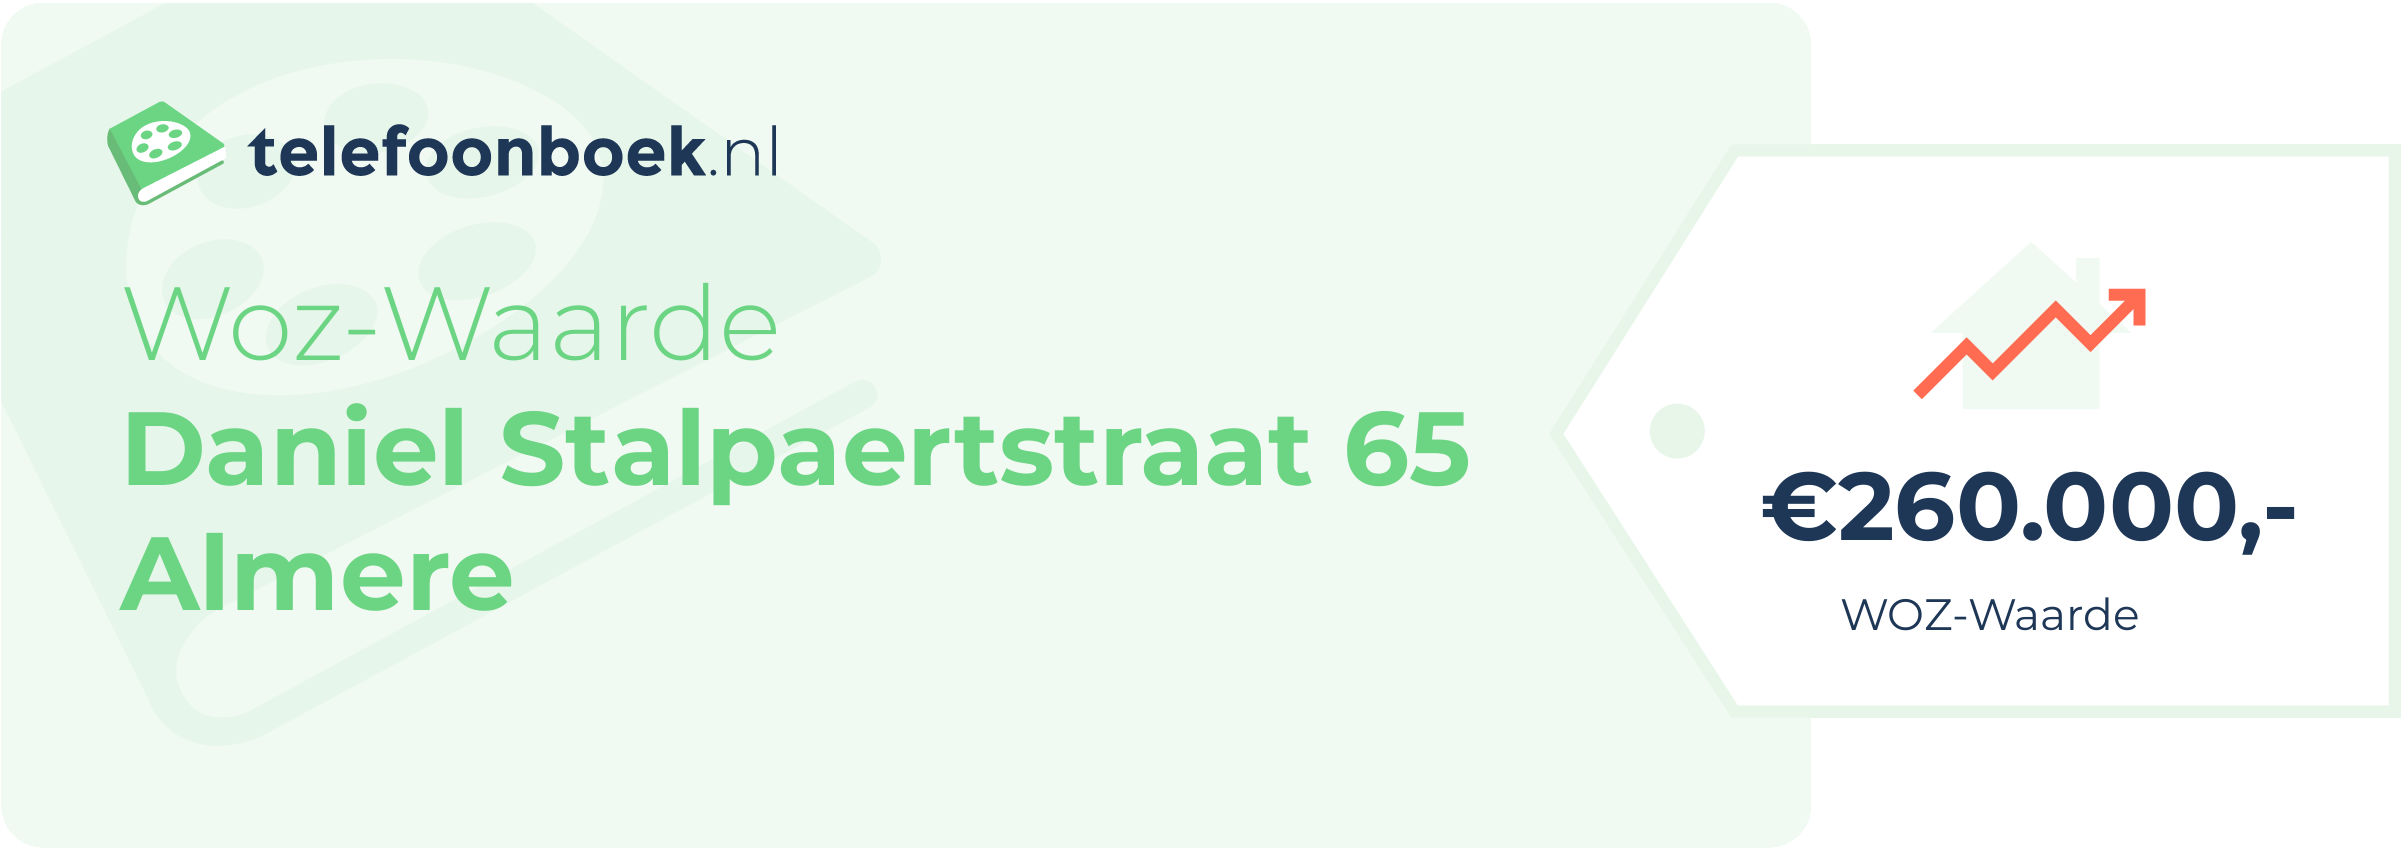 WOZ-waarde Daniel Stalpaertstraat 65 Almere